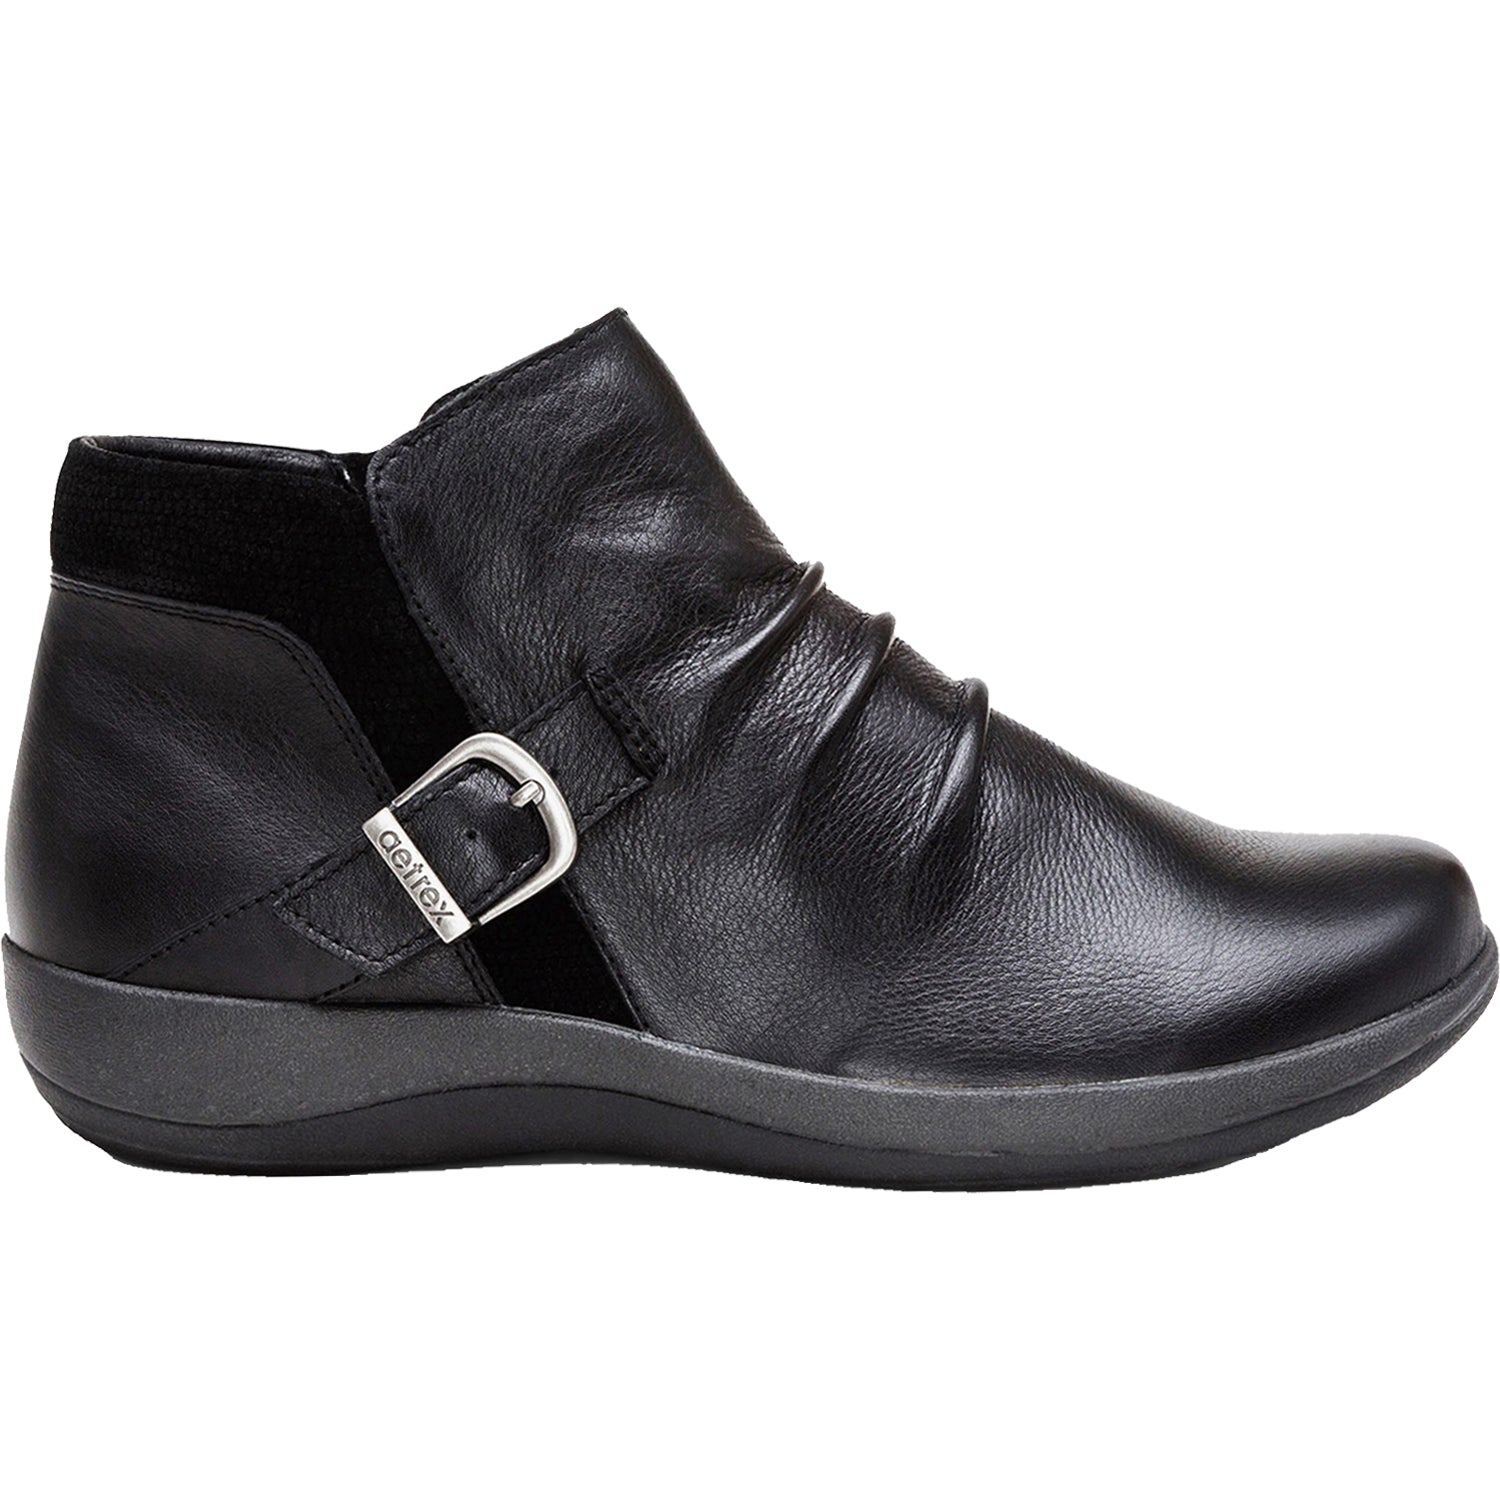 Aetrex Luna | Women's Ankle Boots | Footwear etc.